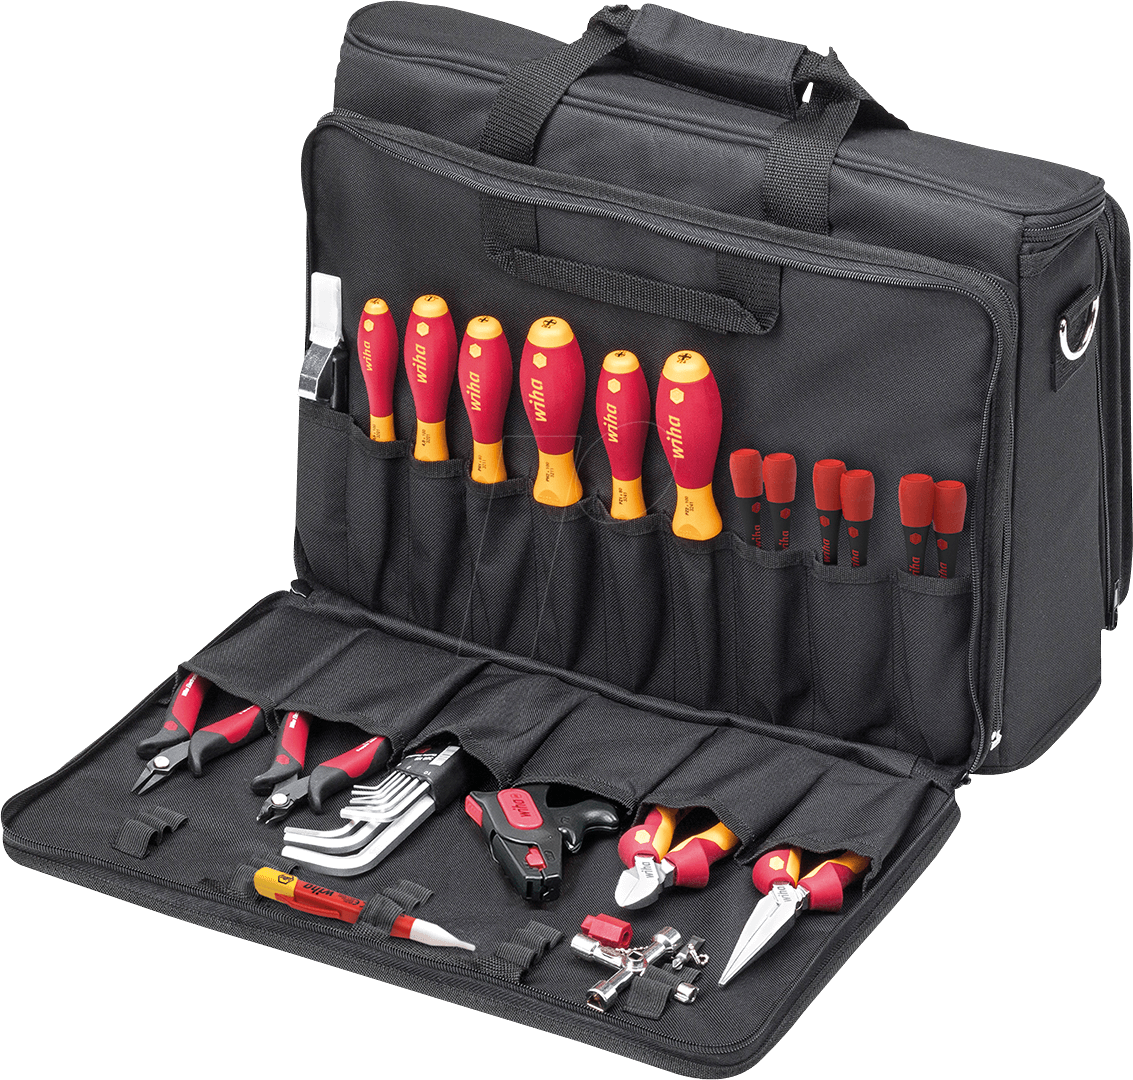 Aggregate 71+ tool kit bag - esthdonghoadian